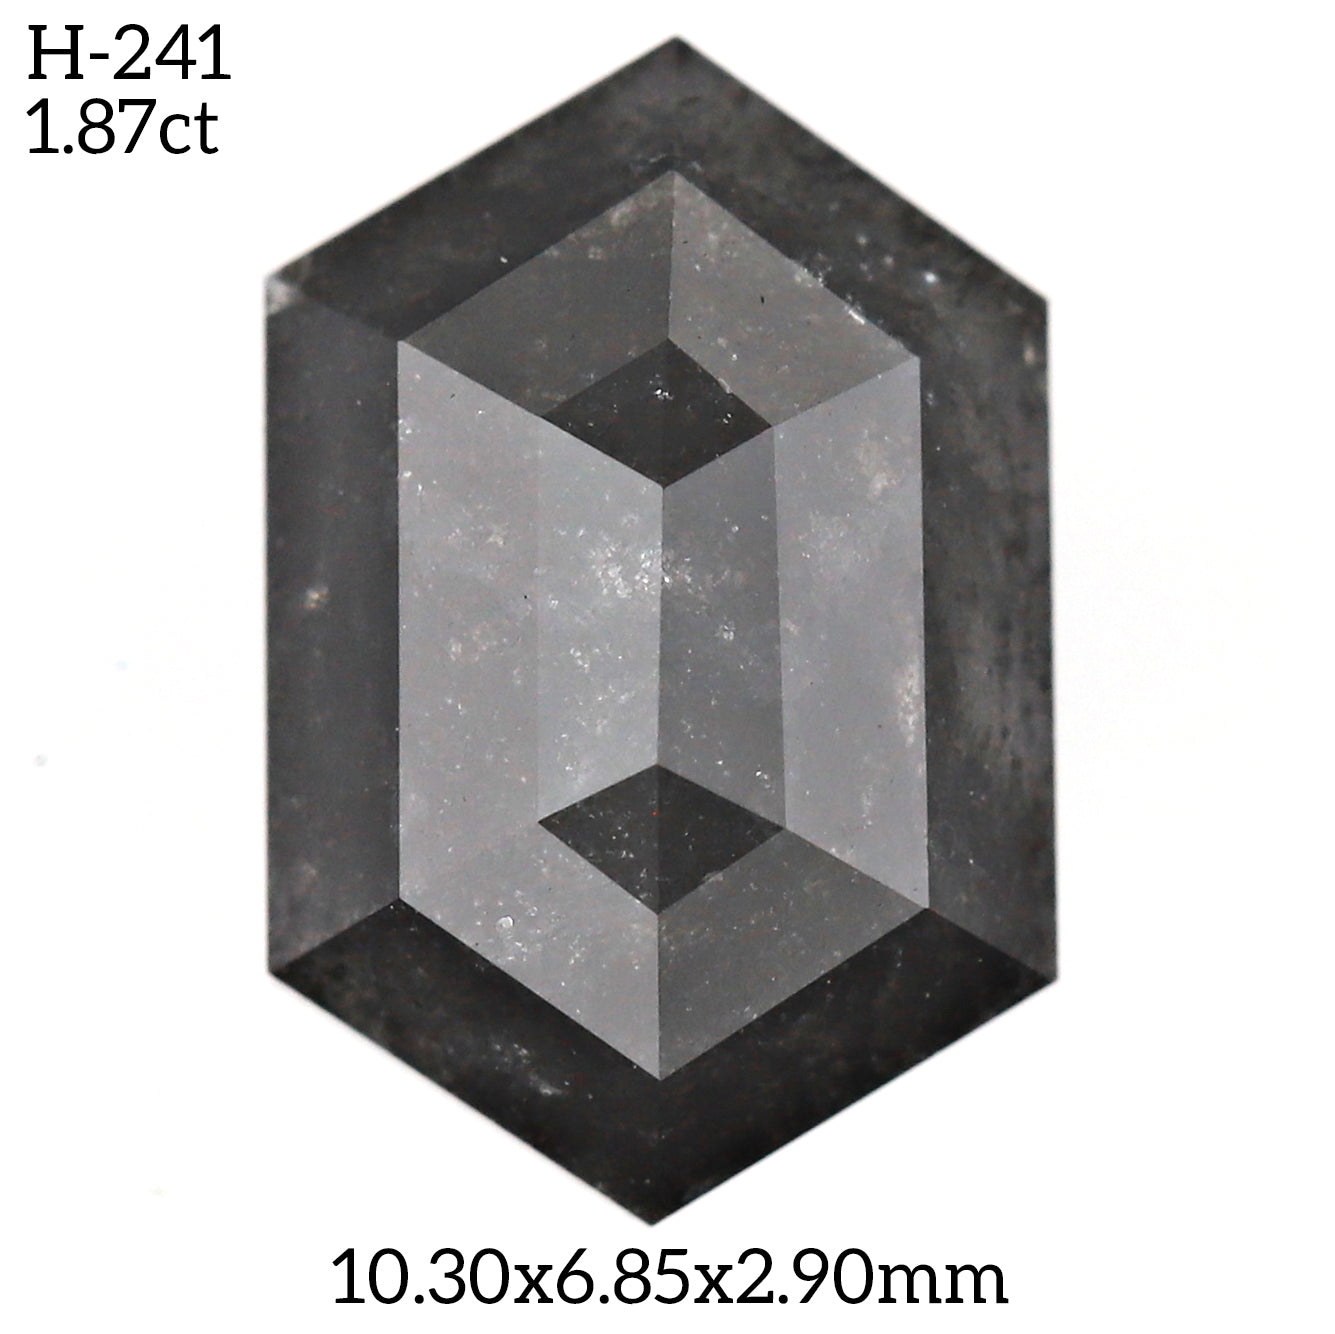 H241 - Salt and pepper hexagon diamond